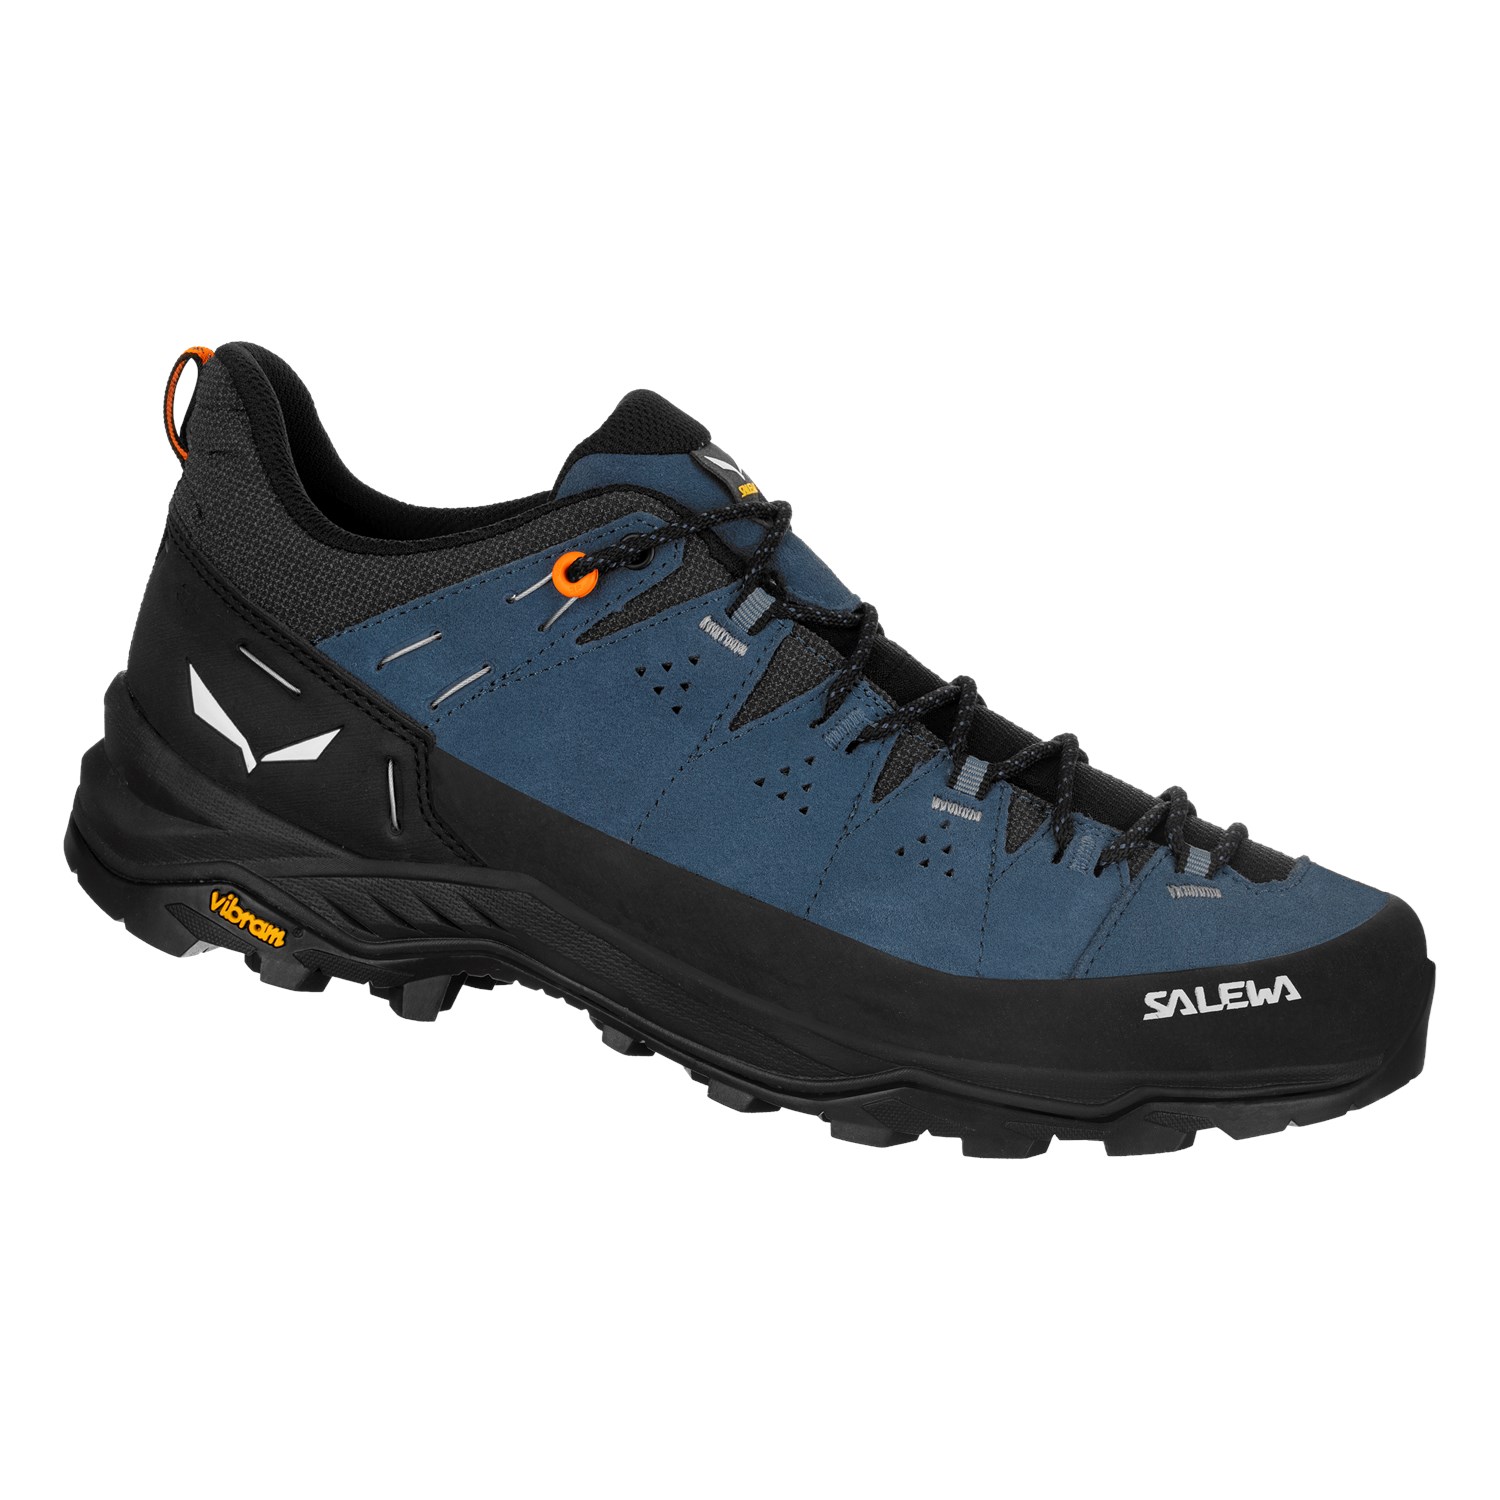 Salewa Alp Trainer 2 Mid GTX Hiking Boot - Men's - Footwear